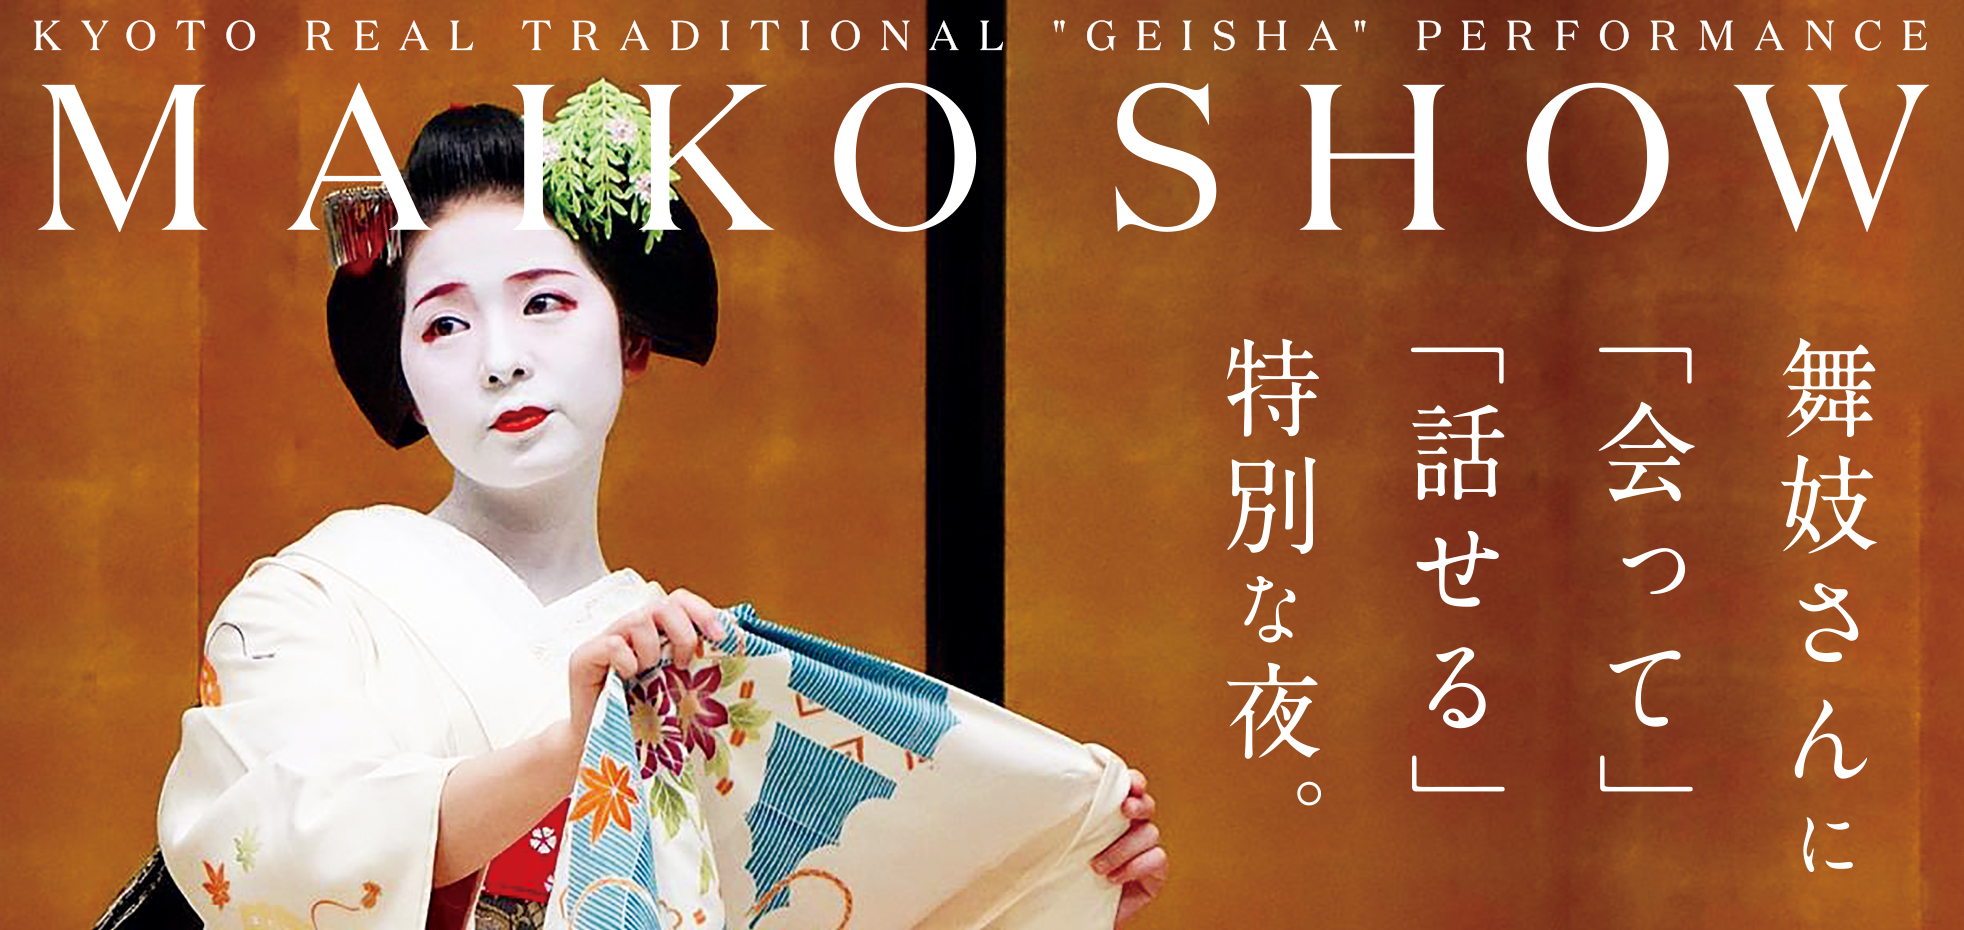 舞妓さんに 会って 話せる 特別な夜 Maiko Show 京都グランベルホテルにて開催 株式会社ベルーナのプレスリリース